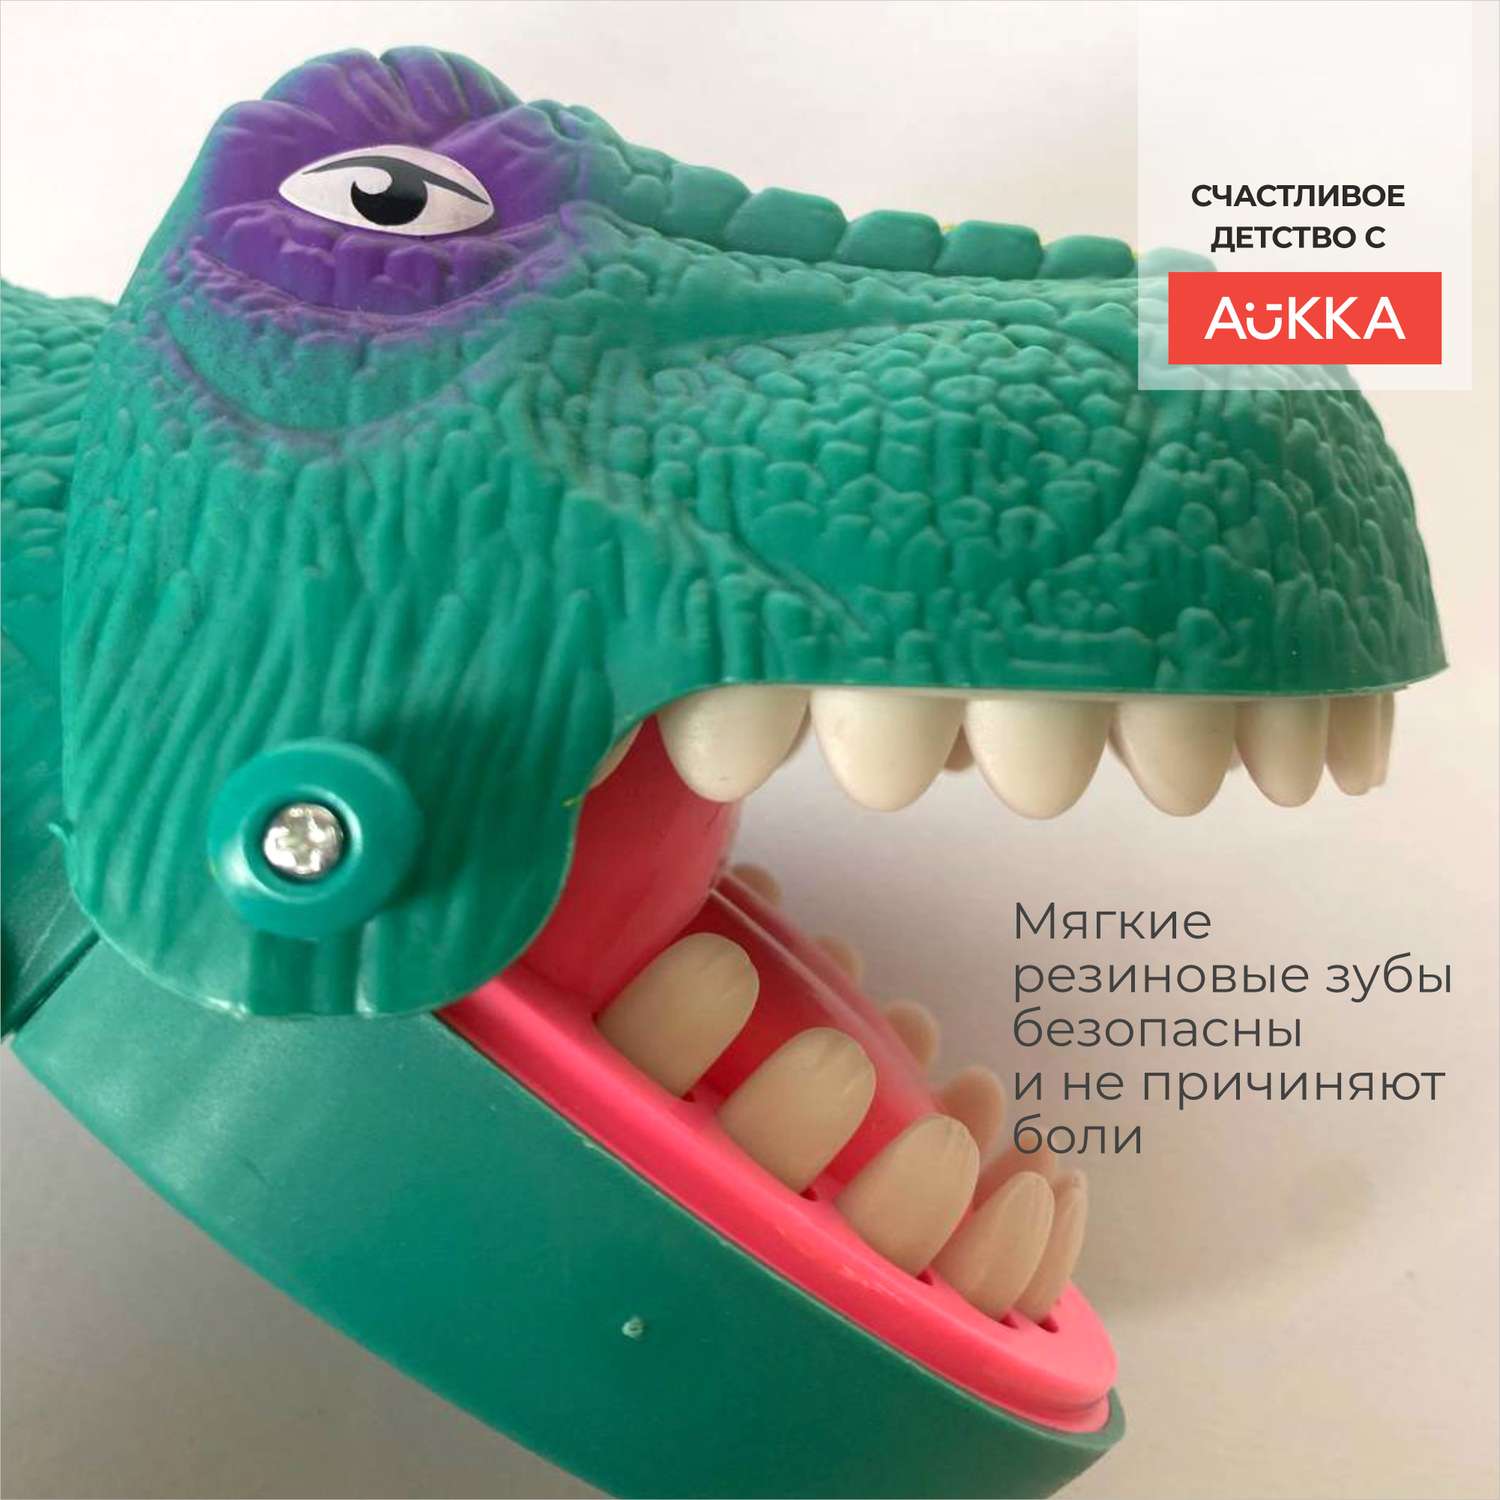 Настольная игра AUKKA динозавр зубастик угадай больной зуб - фото 4